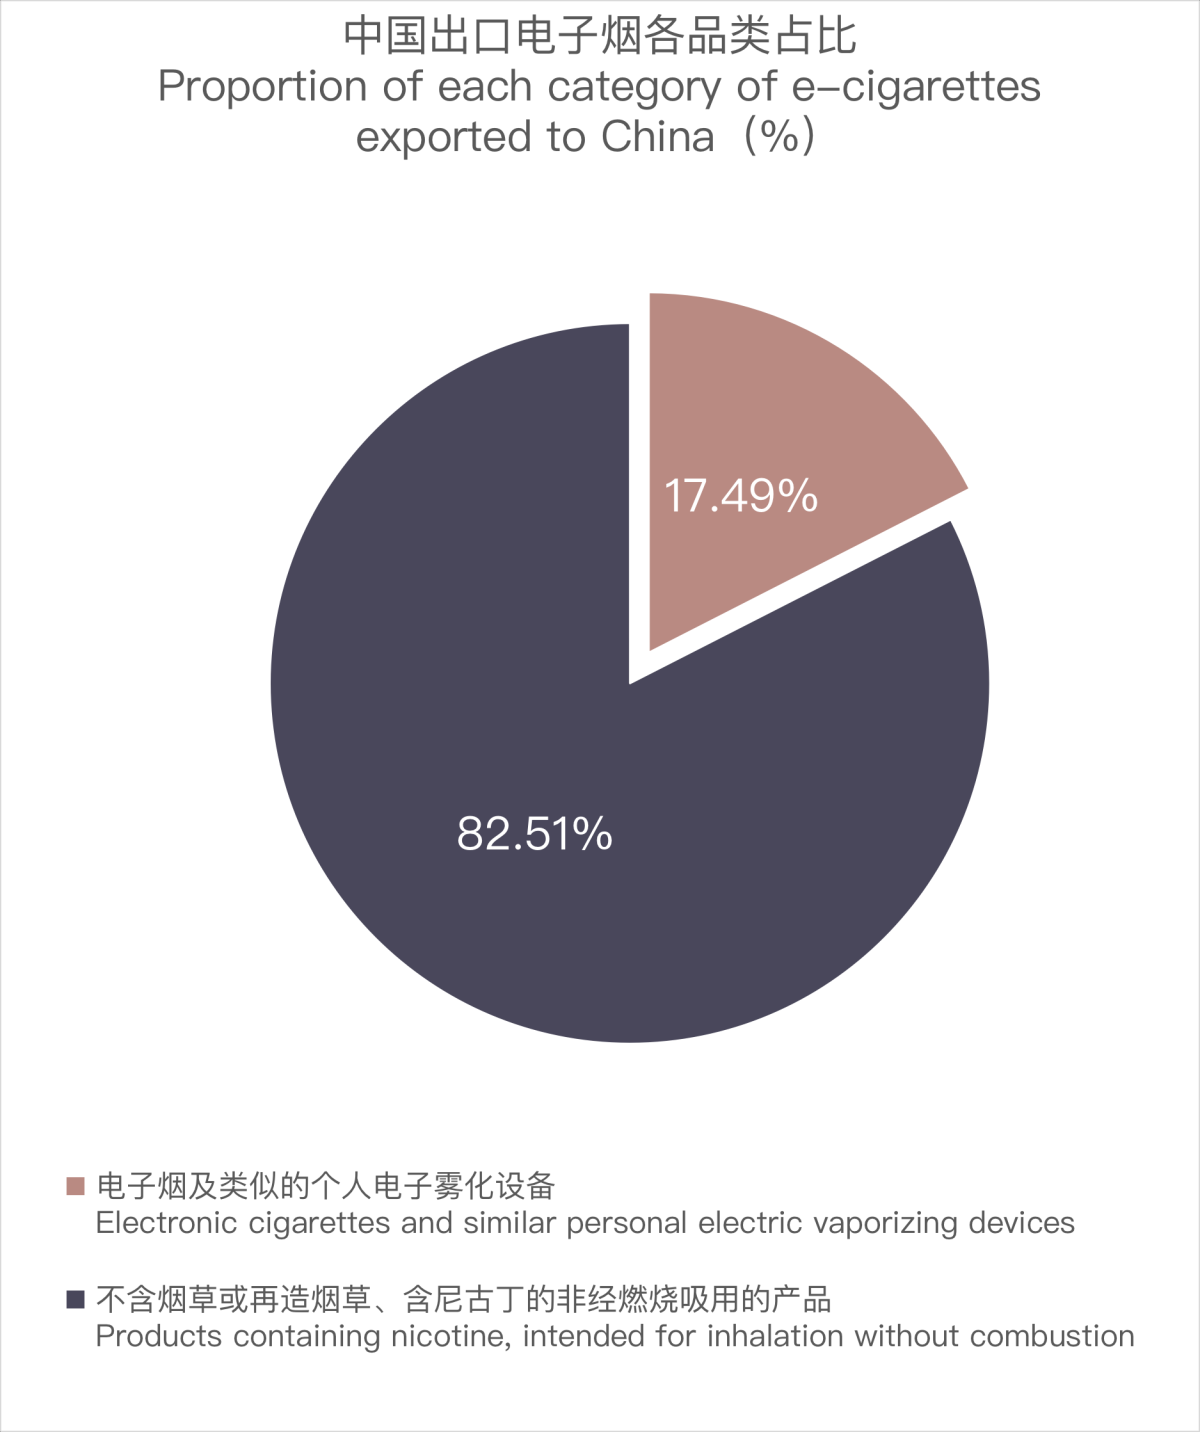 3月中国出口马来西亚电子烟约2676万美元 环比增长23.21%